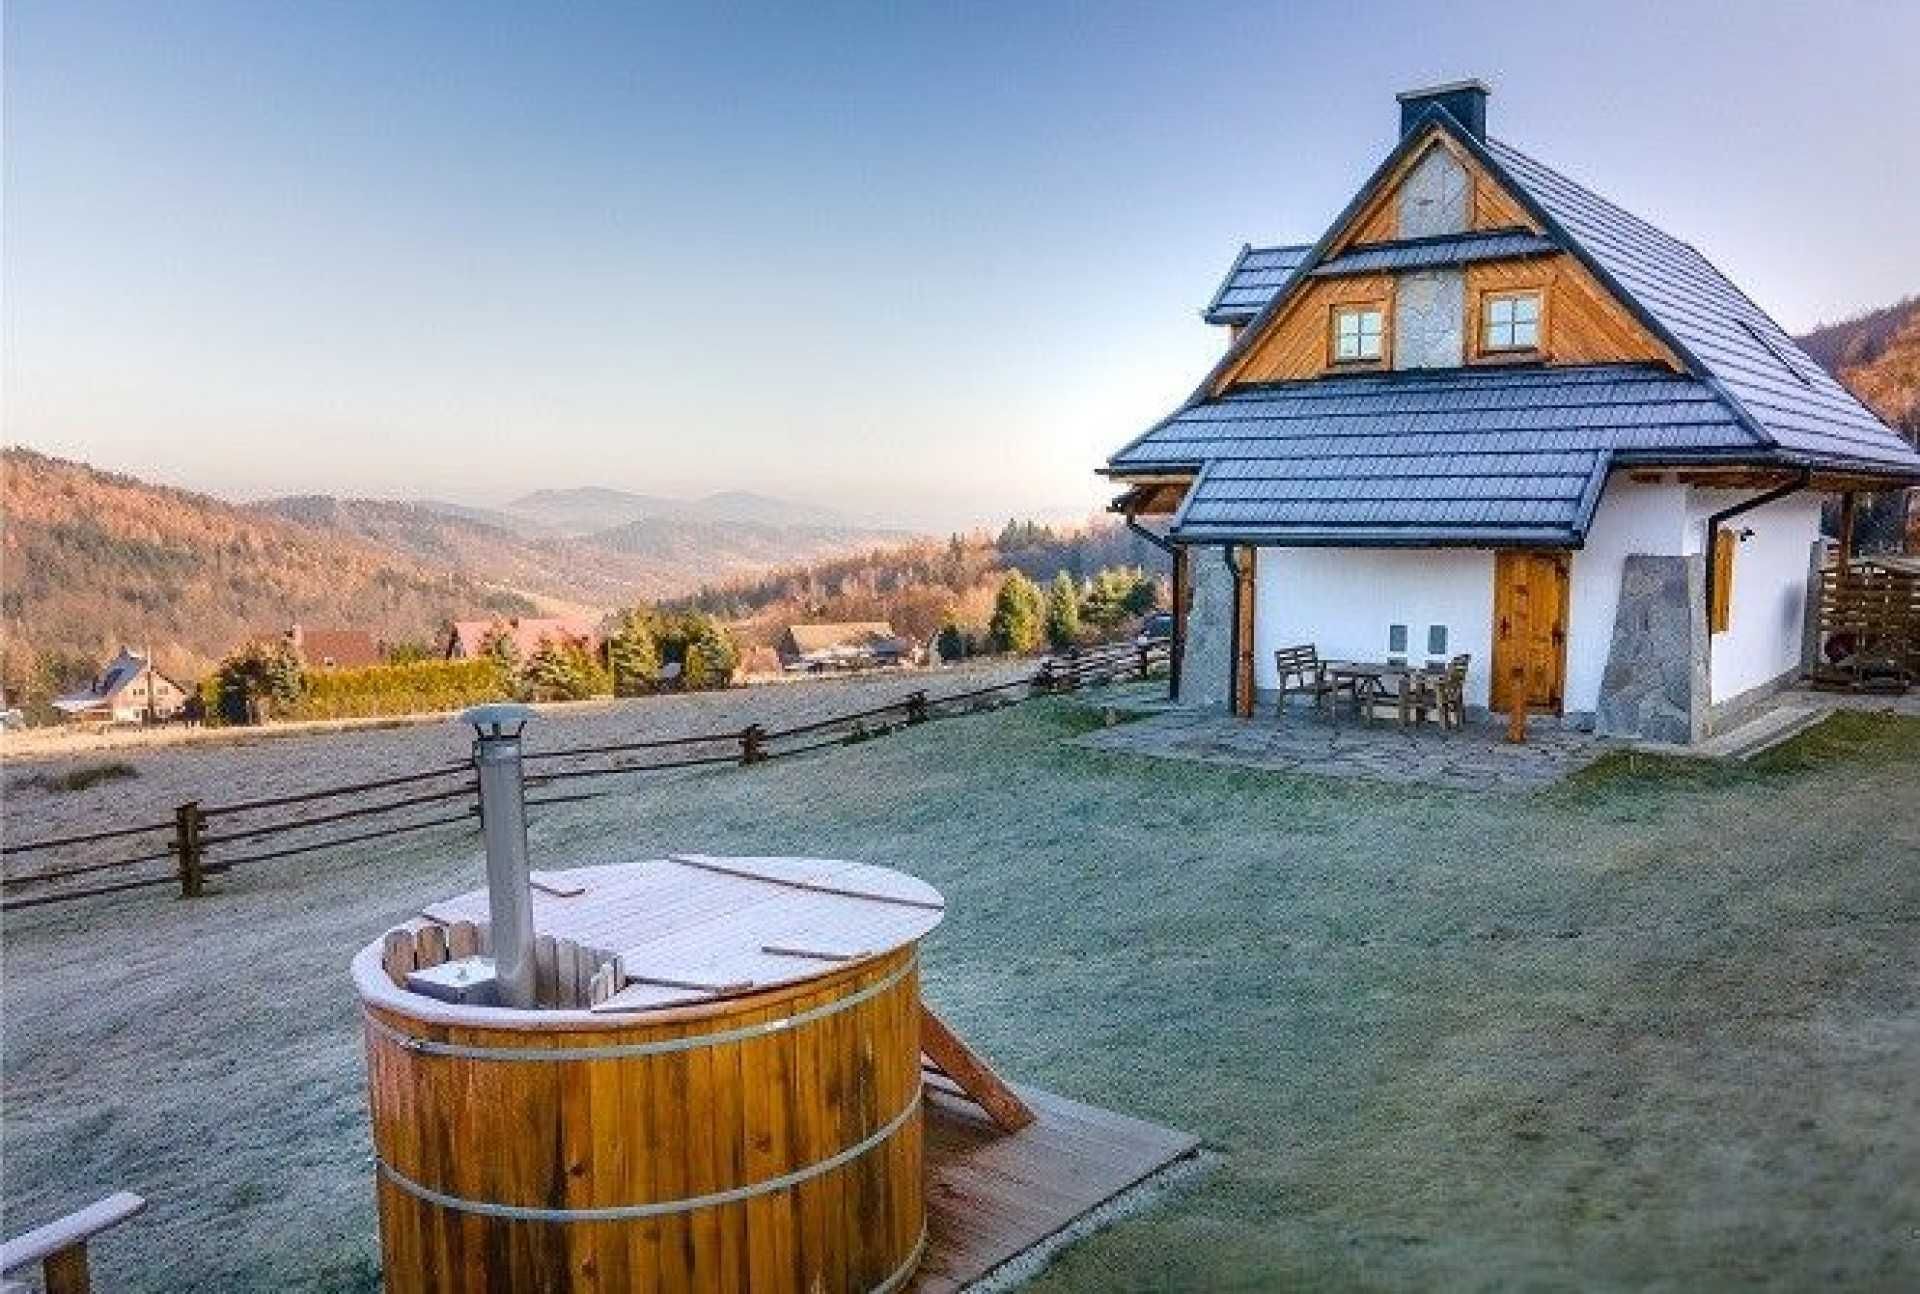 Klimatyczny dom w górach z balią i sauną